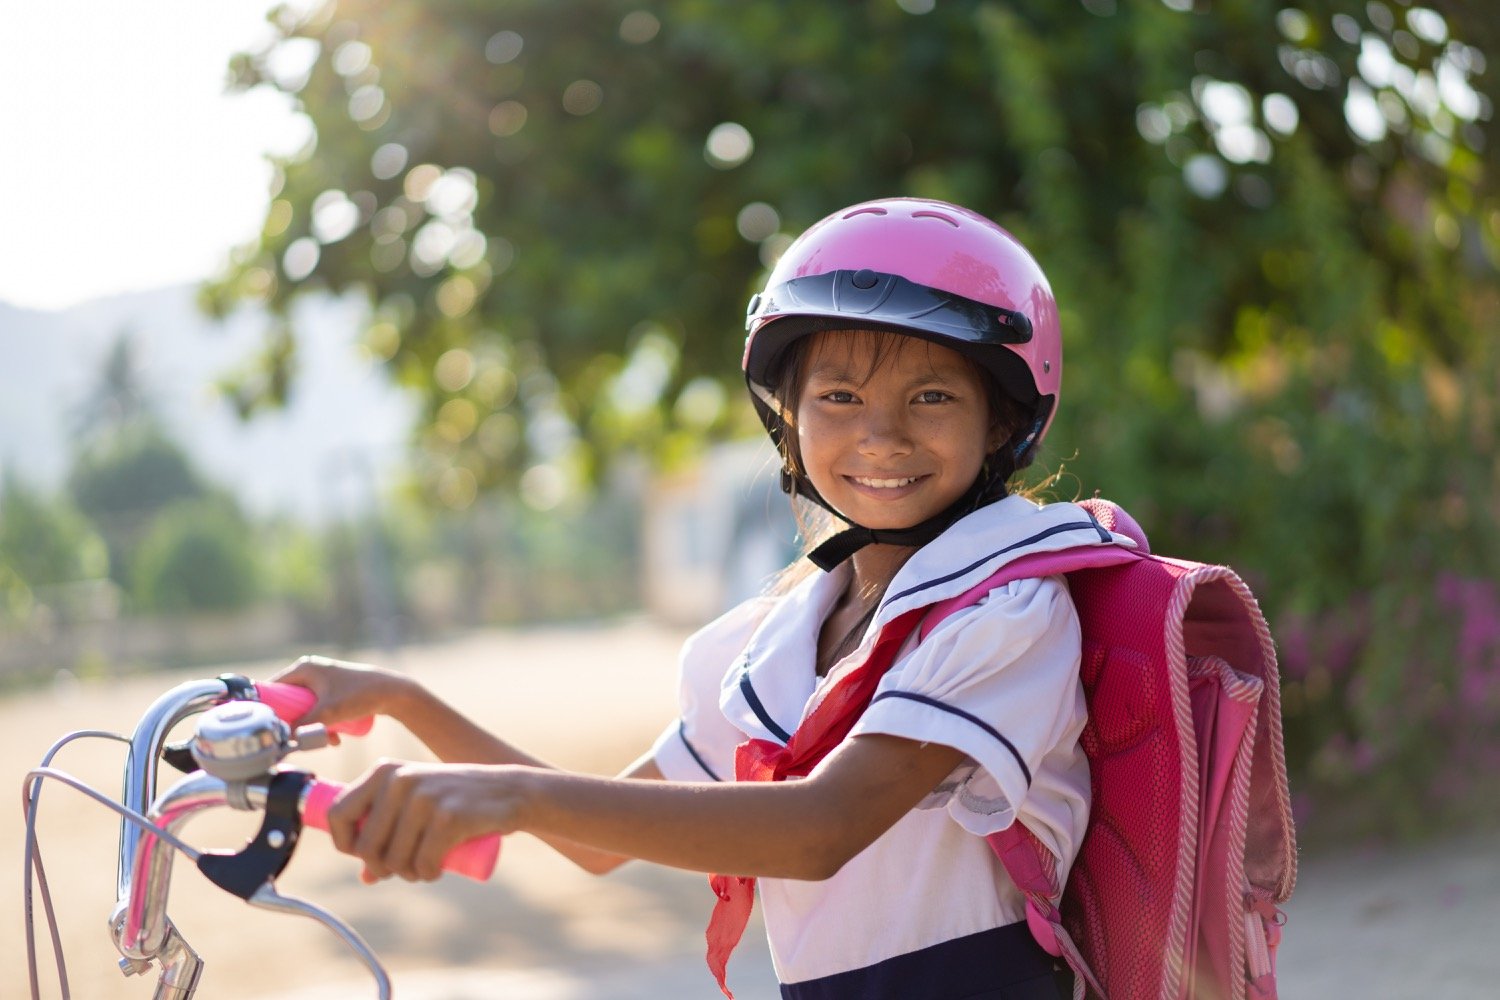 Obama Foundation - Bike for girls Vietnam